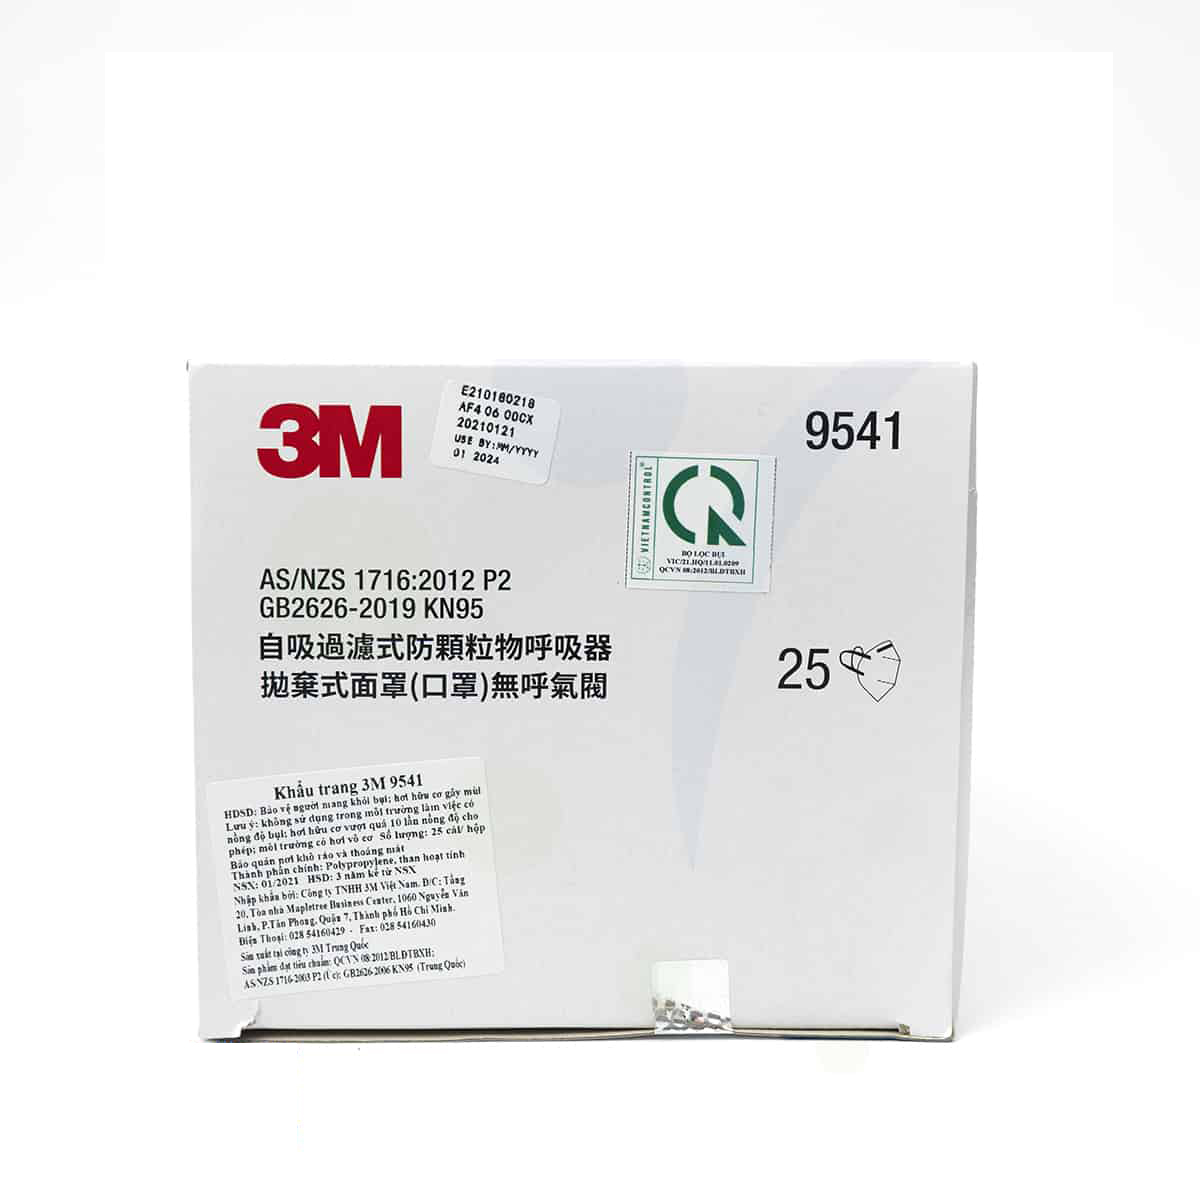 Khẩu trang N95 3M 9541 tiêu chuẩn KN95 (tương đương N95) - Khẩu trang hoạt tính 3D 5 lớp, chống virus, bụi mịn, phòng dịch, chính hãng 3M